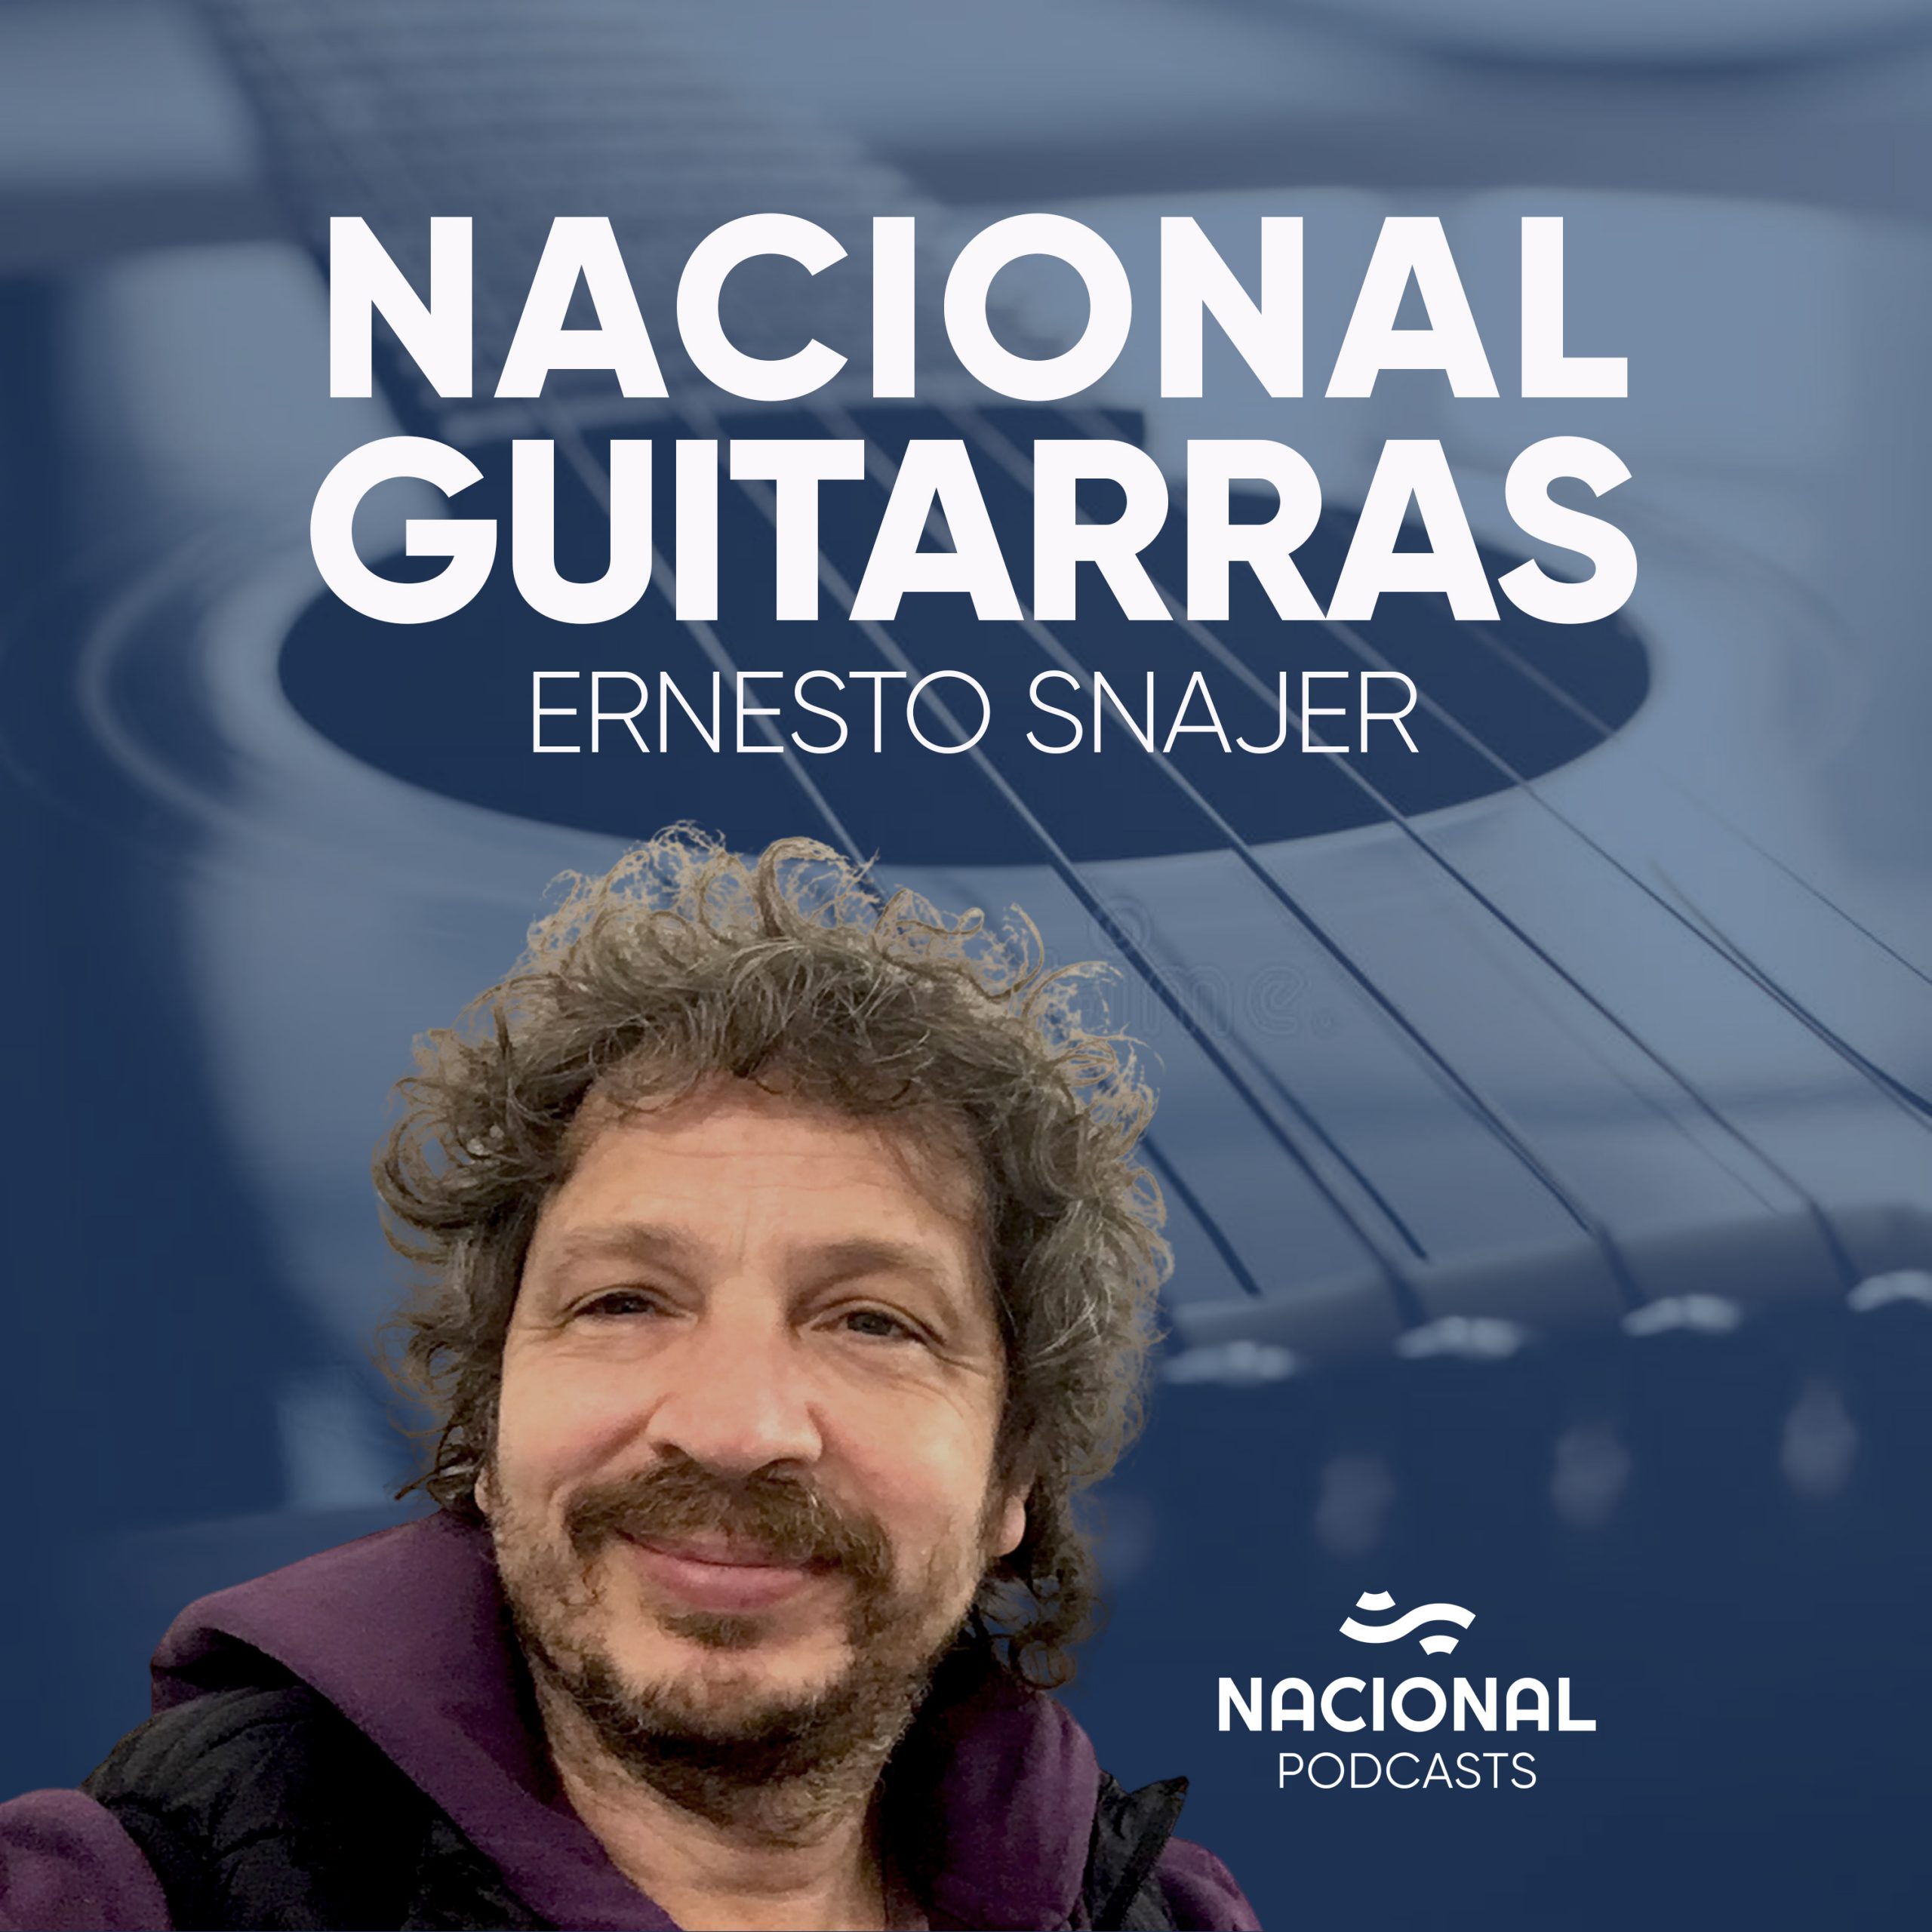 Nacional Guitarras